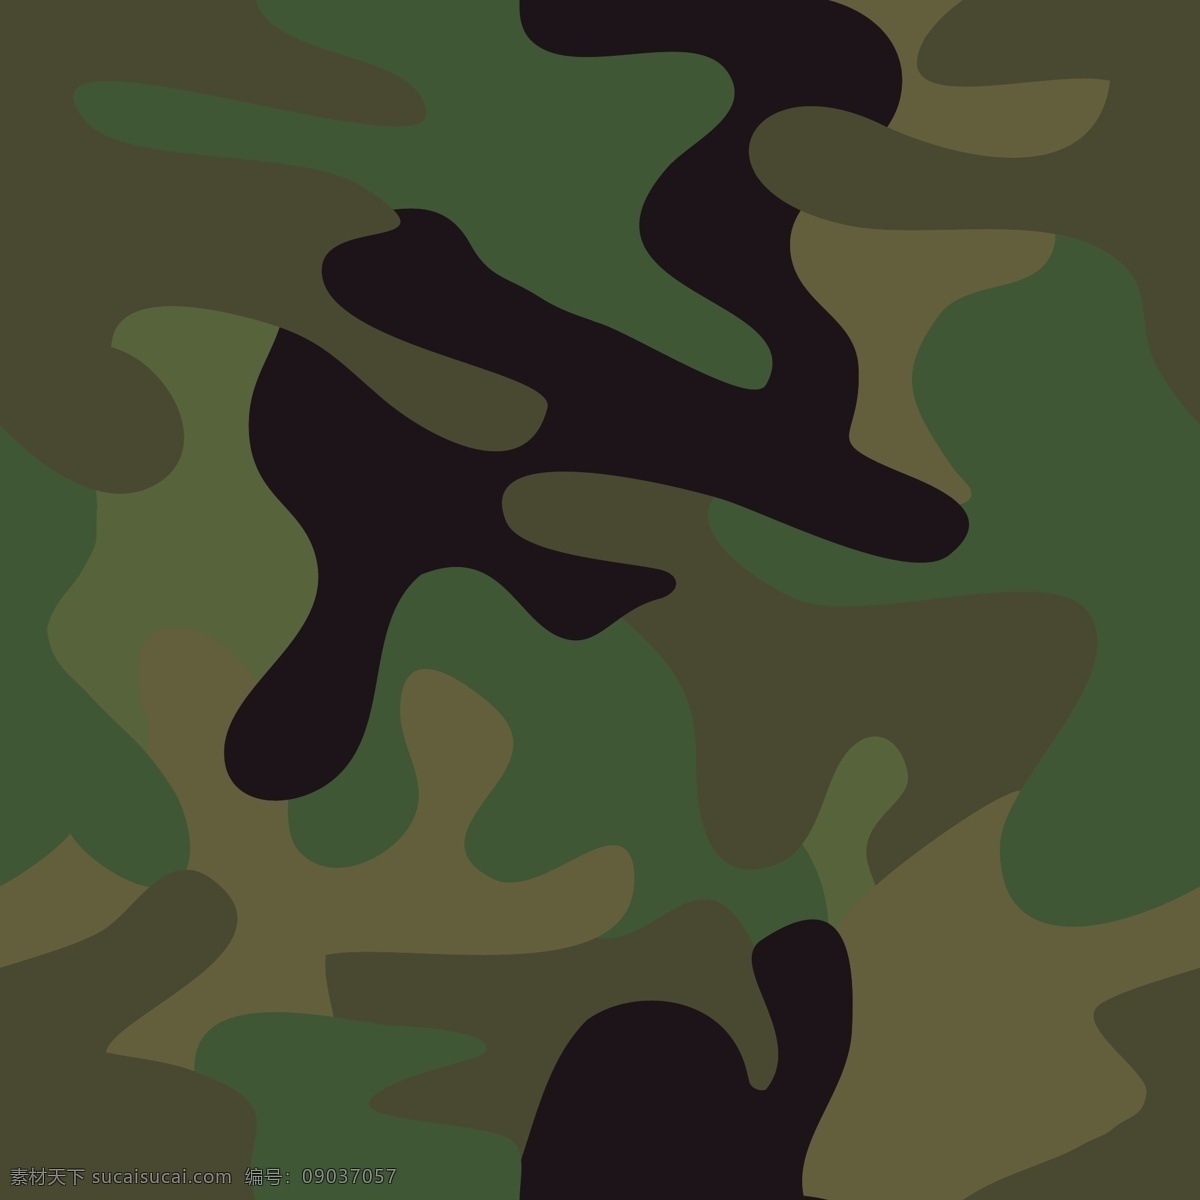 个性迷彩4 背景 4个色 黑色 深军绿 绿色 卡其 彩色 矢量 迷彩 军装 户外 时尚 矢量素材 其他矢量